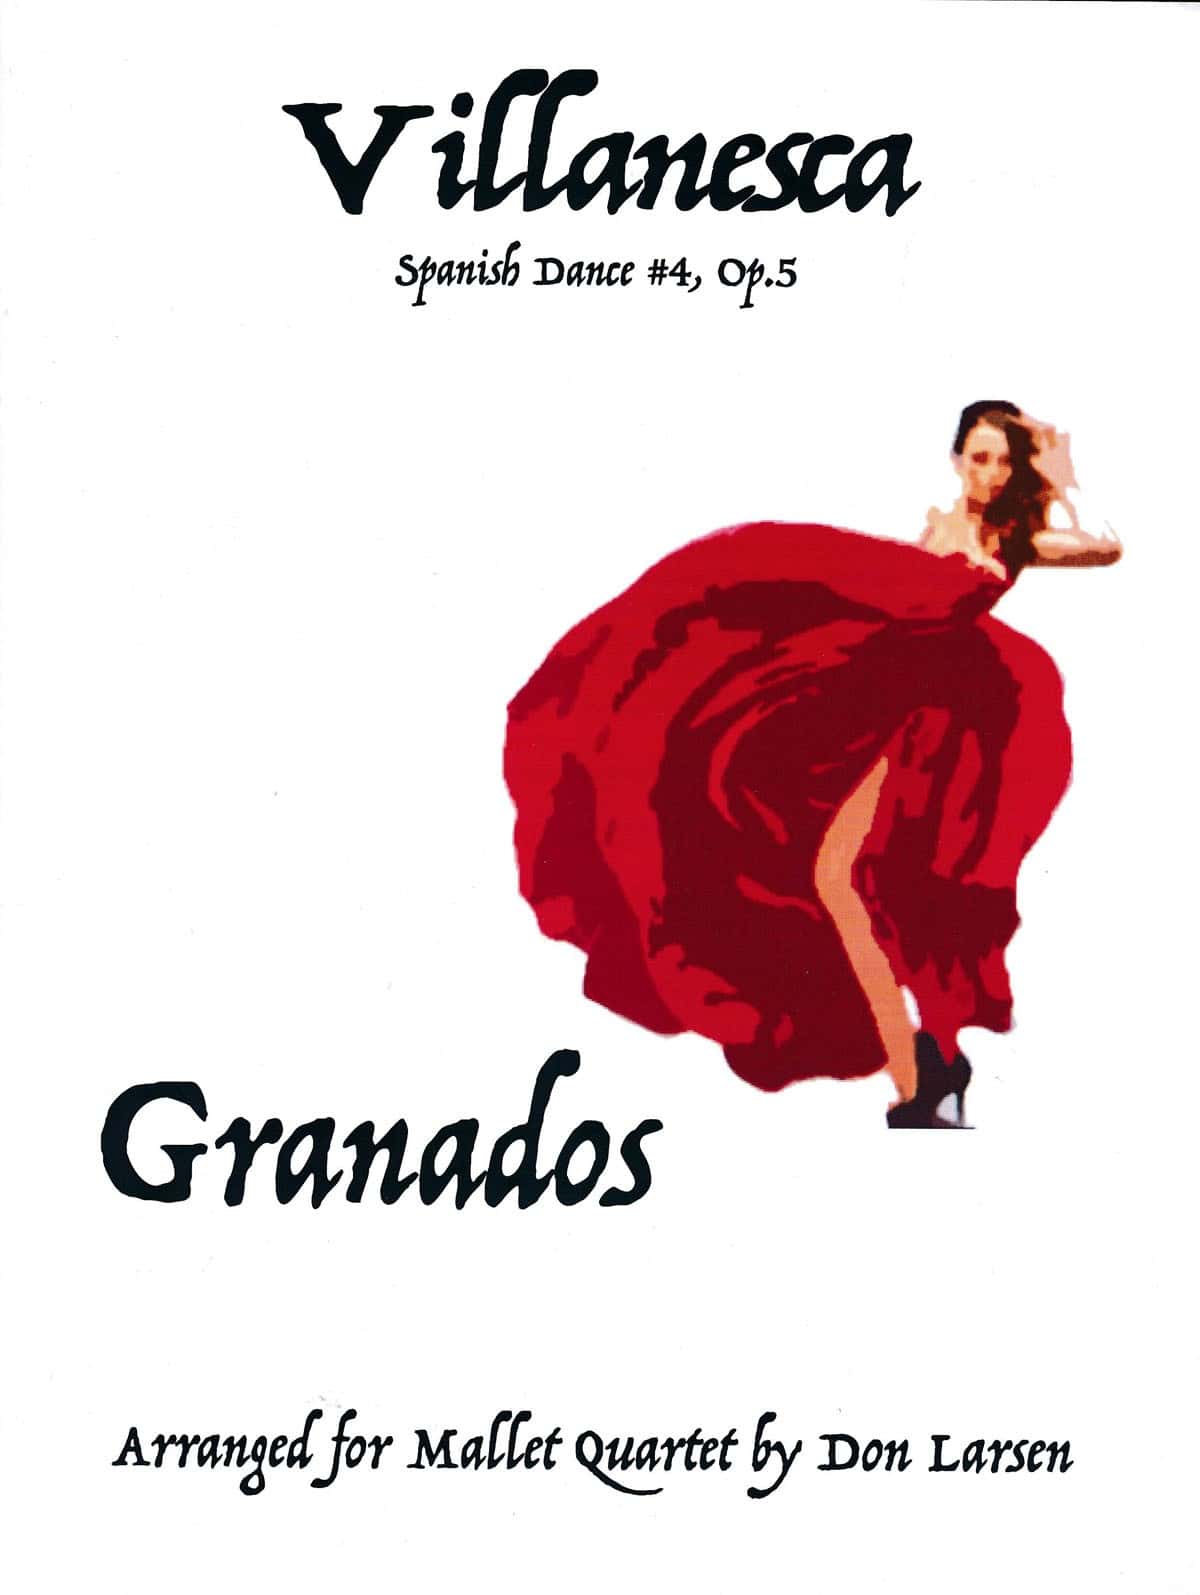 Villanesca - Spanish Dance no. 4 op.5 by Granados arr. Don Larsen